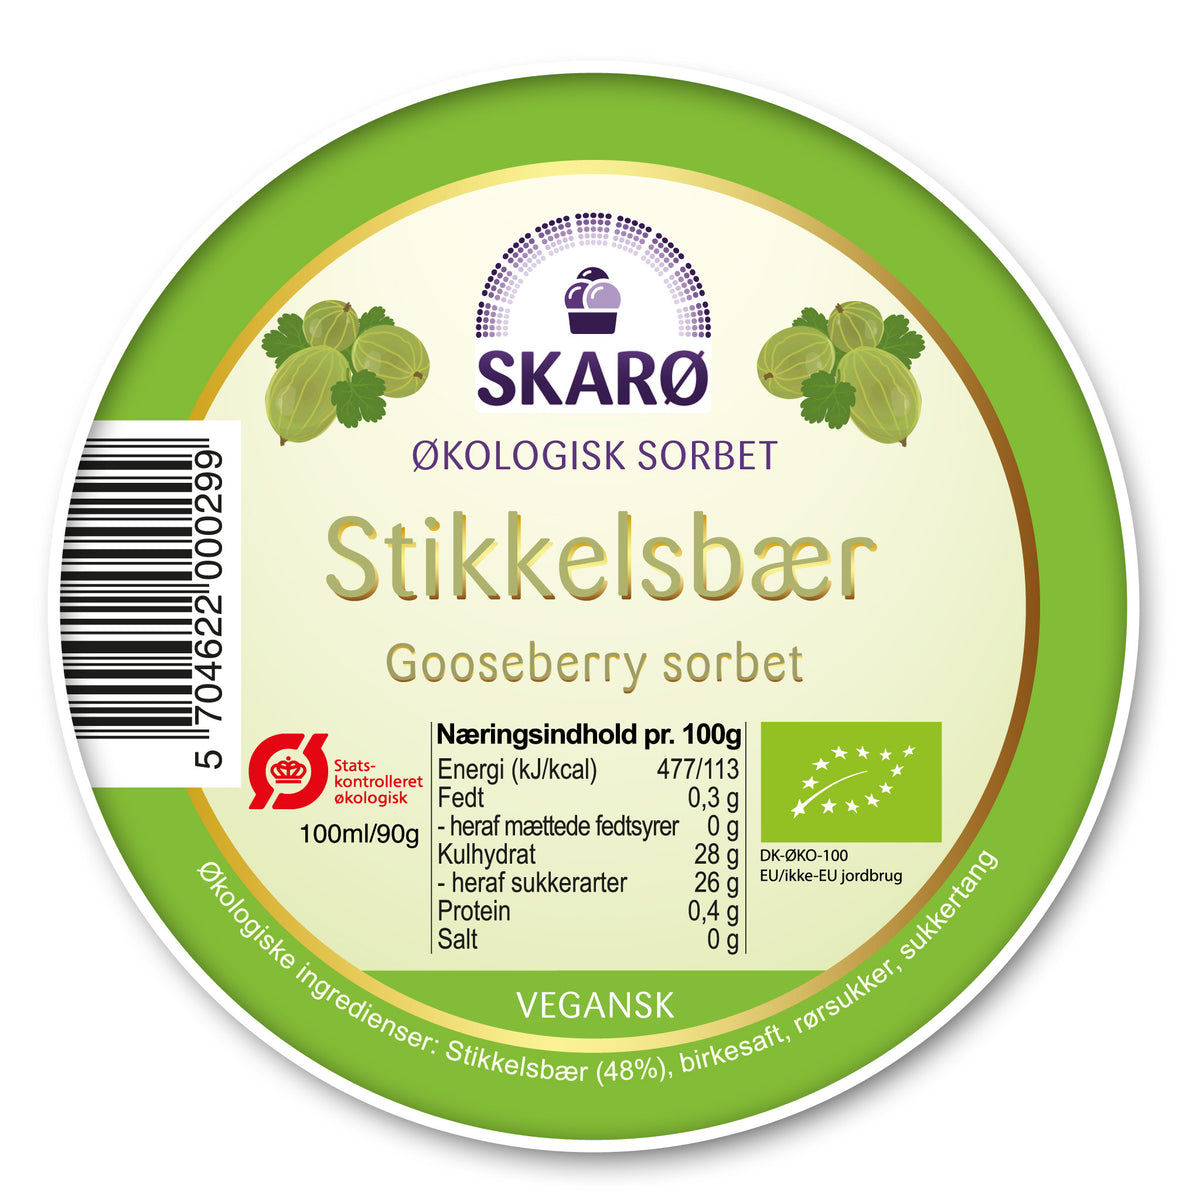 Økologisk vegansk sorbet med Stikkelsbær - is fra Skarø